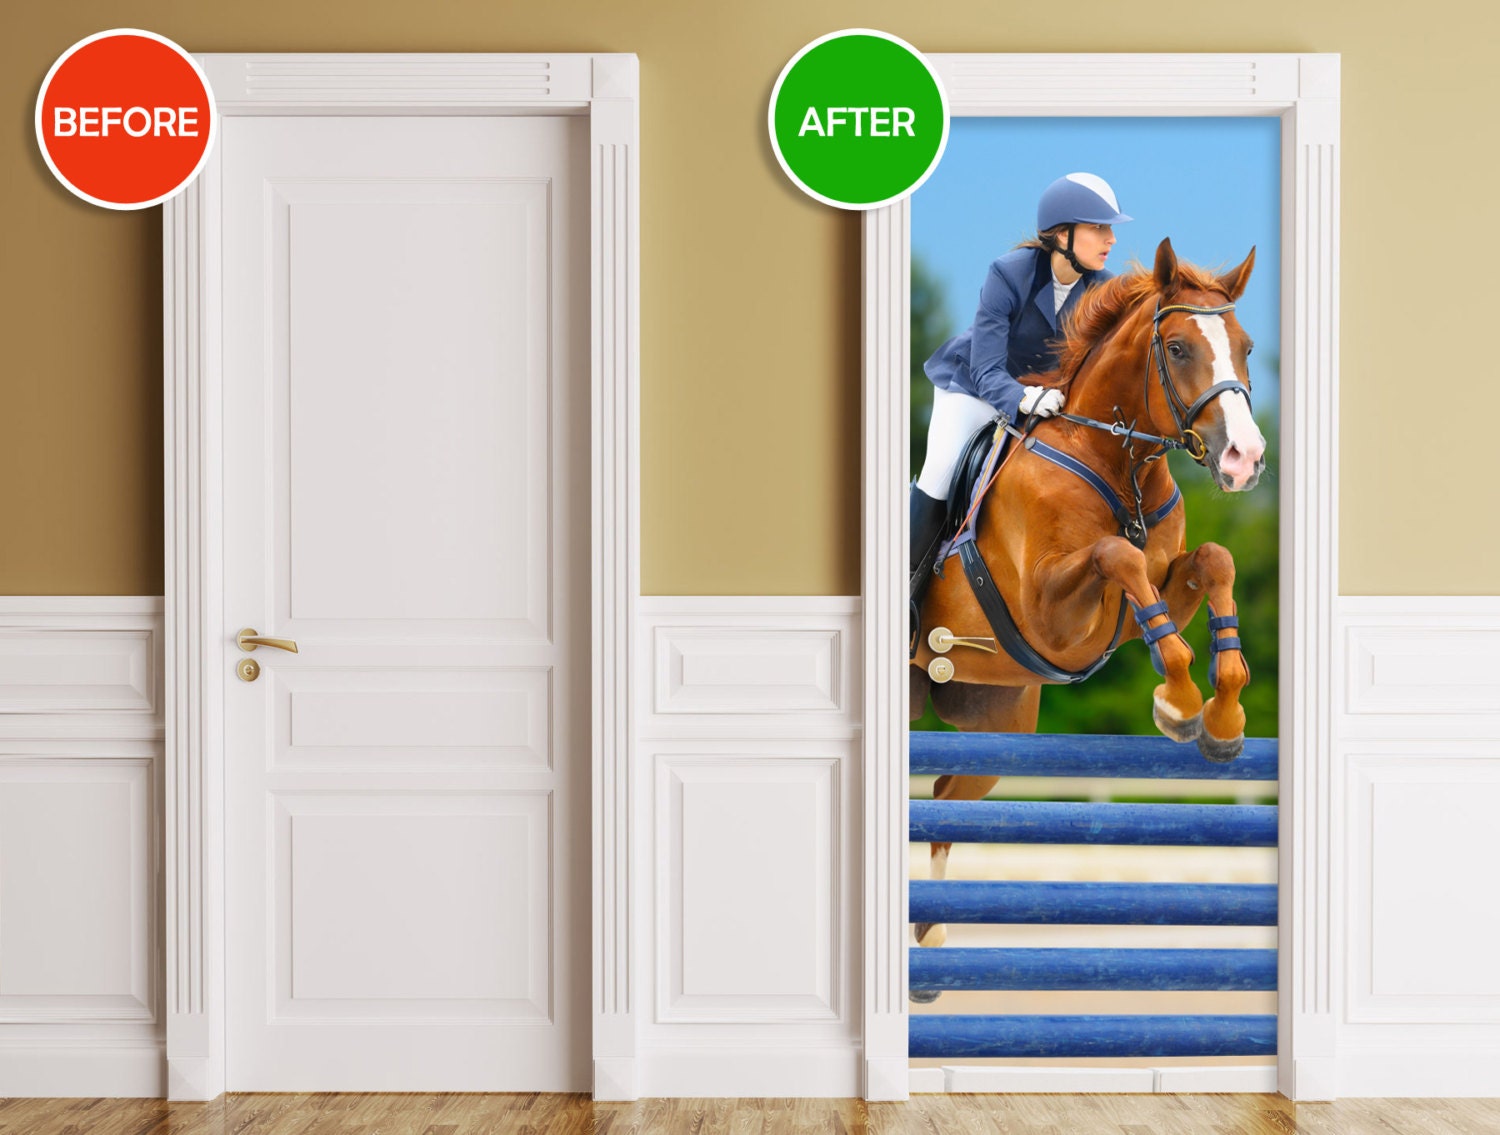 Door / Wall / Fridge Sticker - Horse Door Cover